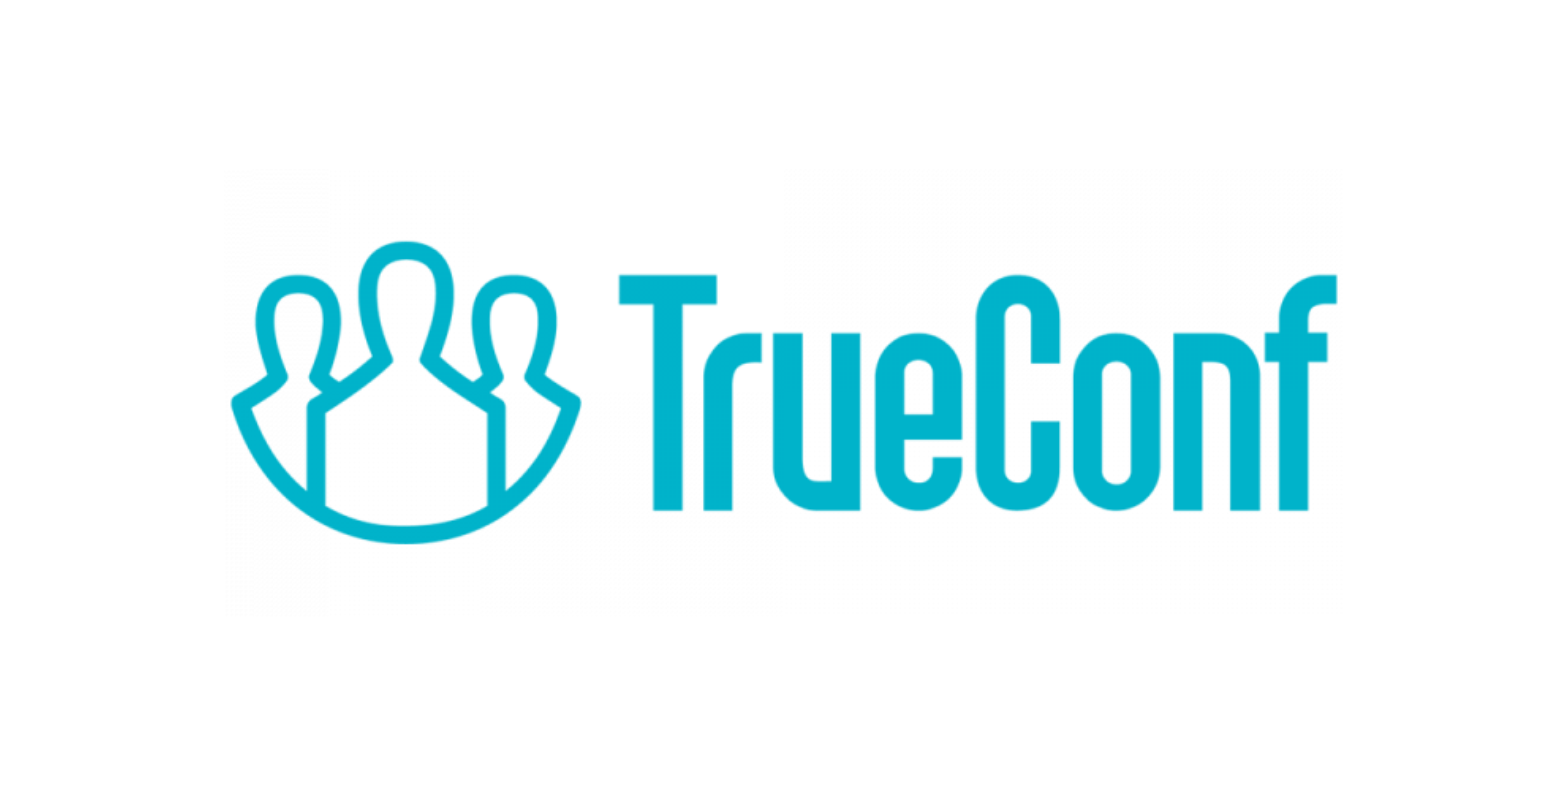 TrueConf Server Публичные веб-конференции на 100 гостей на 1 год EDU